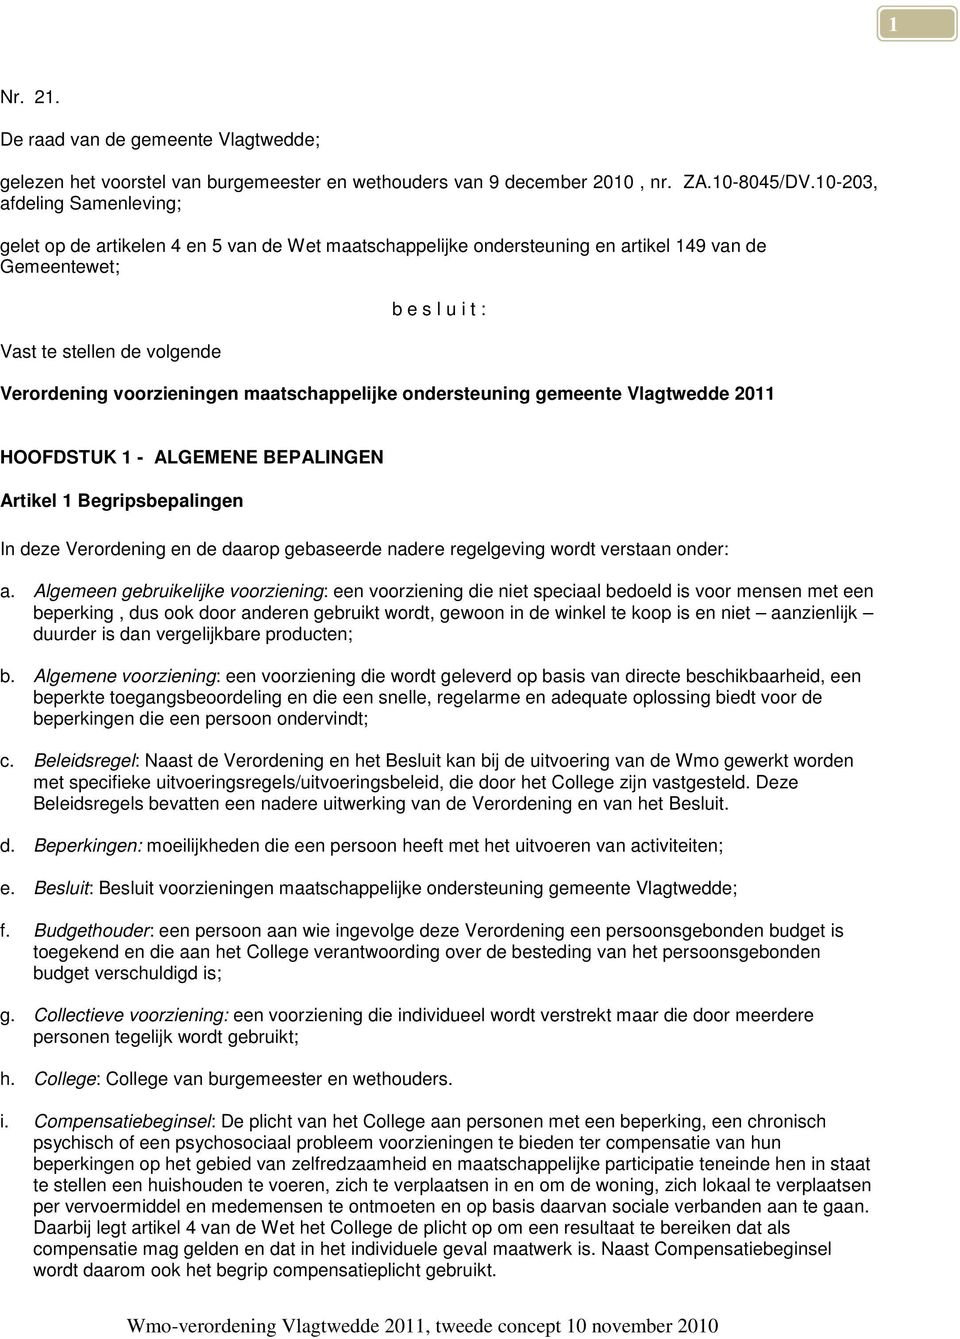 voorzieningen maatschappelijke ondersteuning gemeente Vlagtwedde 2011 HOOFDSTUK 1 - ALGEMENE BEPALINGEN Artikel 1 Begripsbepalingen In deze Verordening en de daarop gebaseerde nadere regelgeving